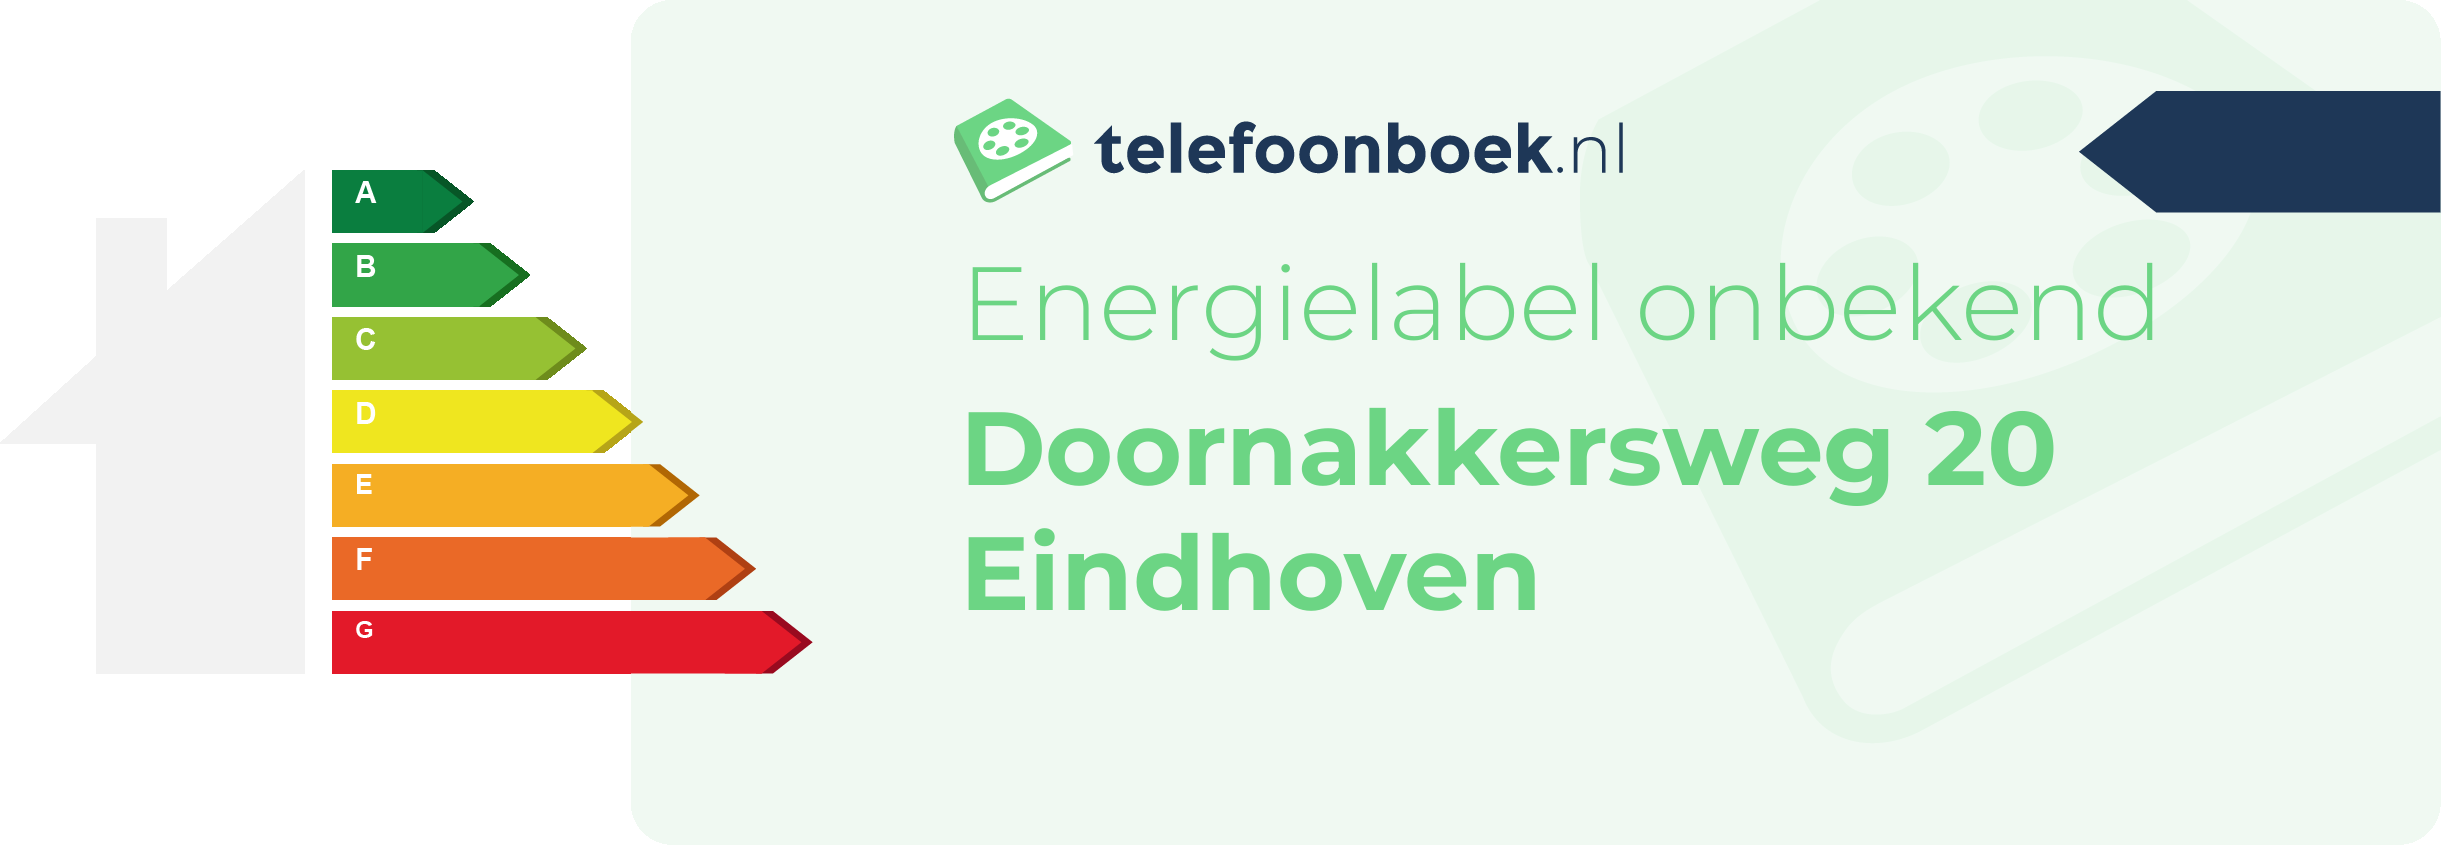 Energielabel Doornakkersweg 20 Eindhoven